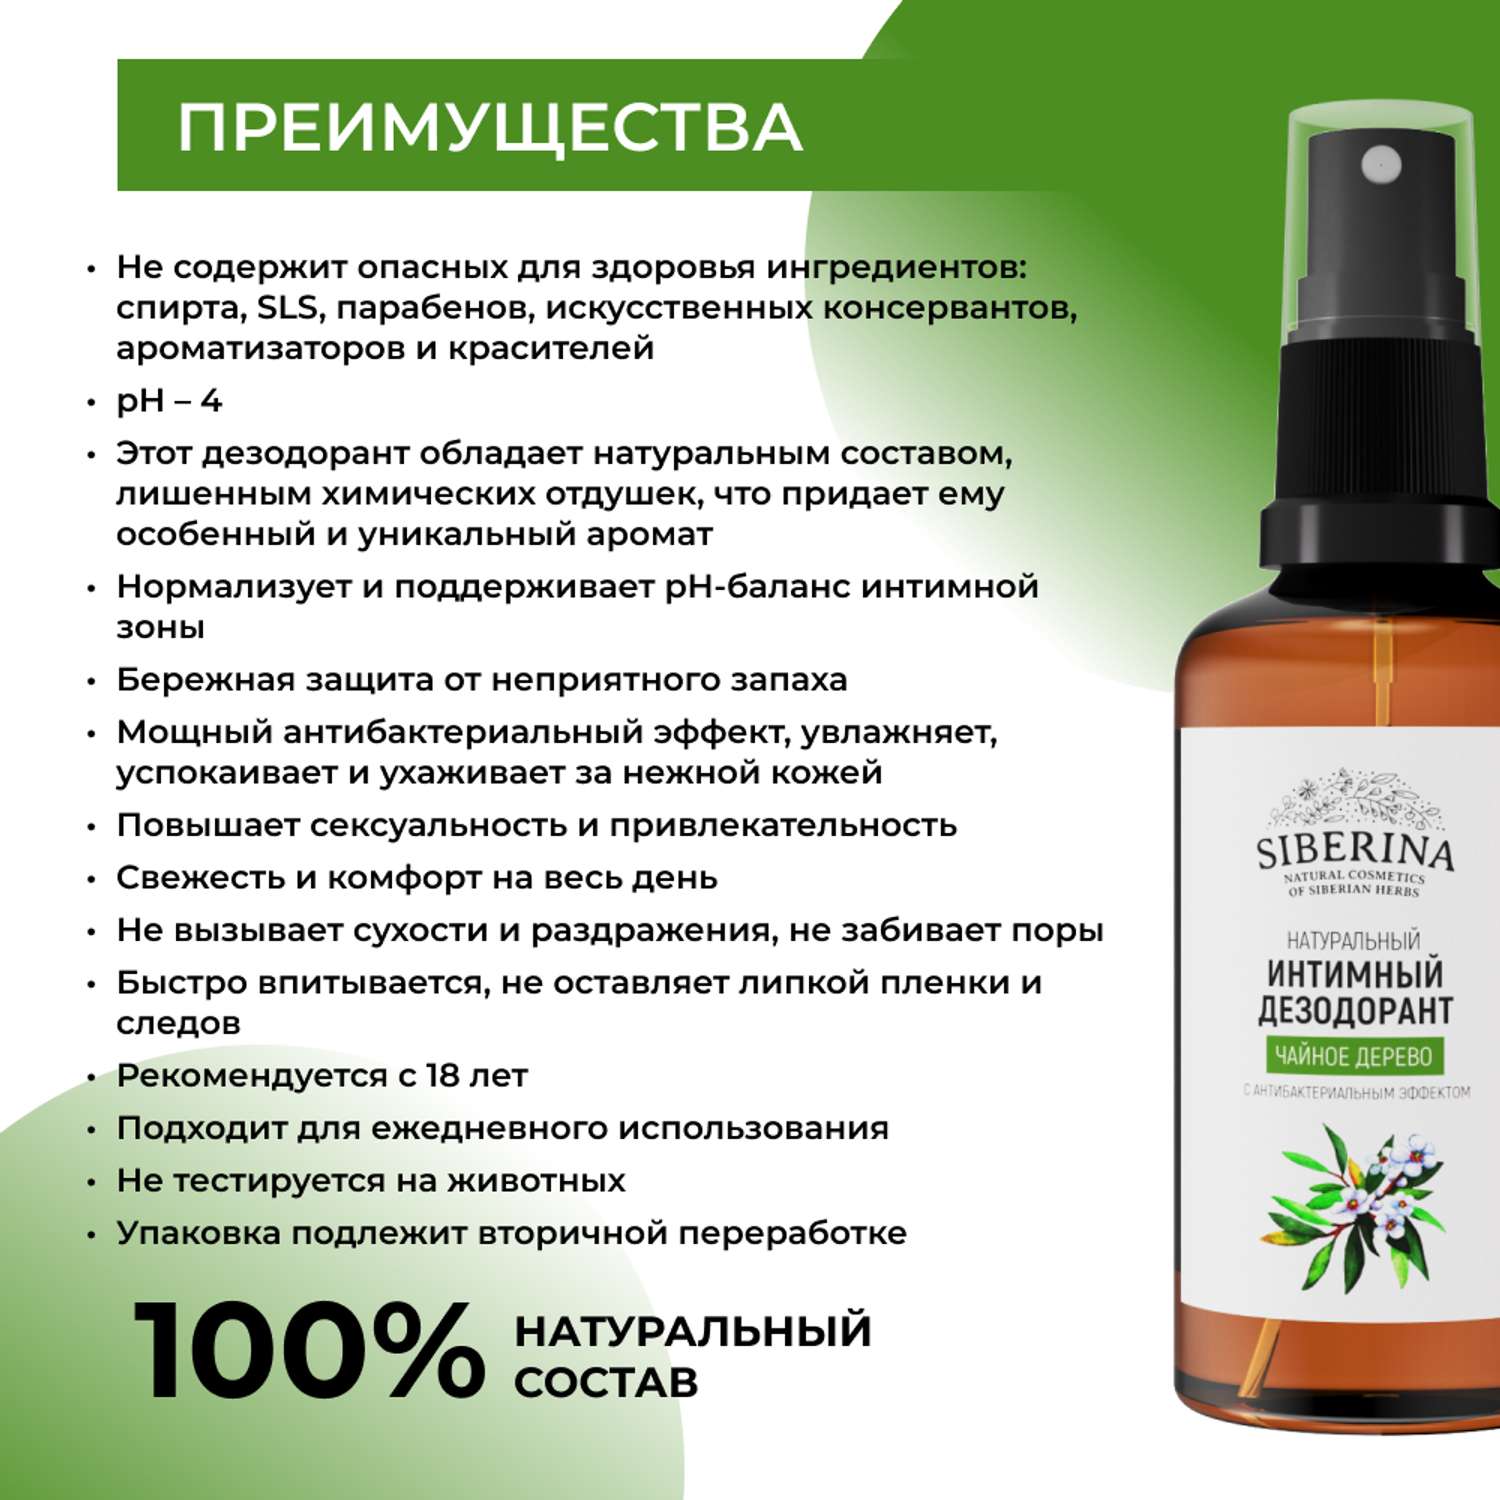 Интимный дезодорант Siberina натуральный «Чайное дерево» антибактериальный без парабенов 50 мл - фото 3